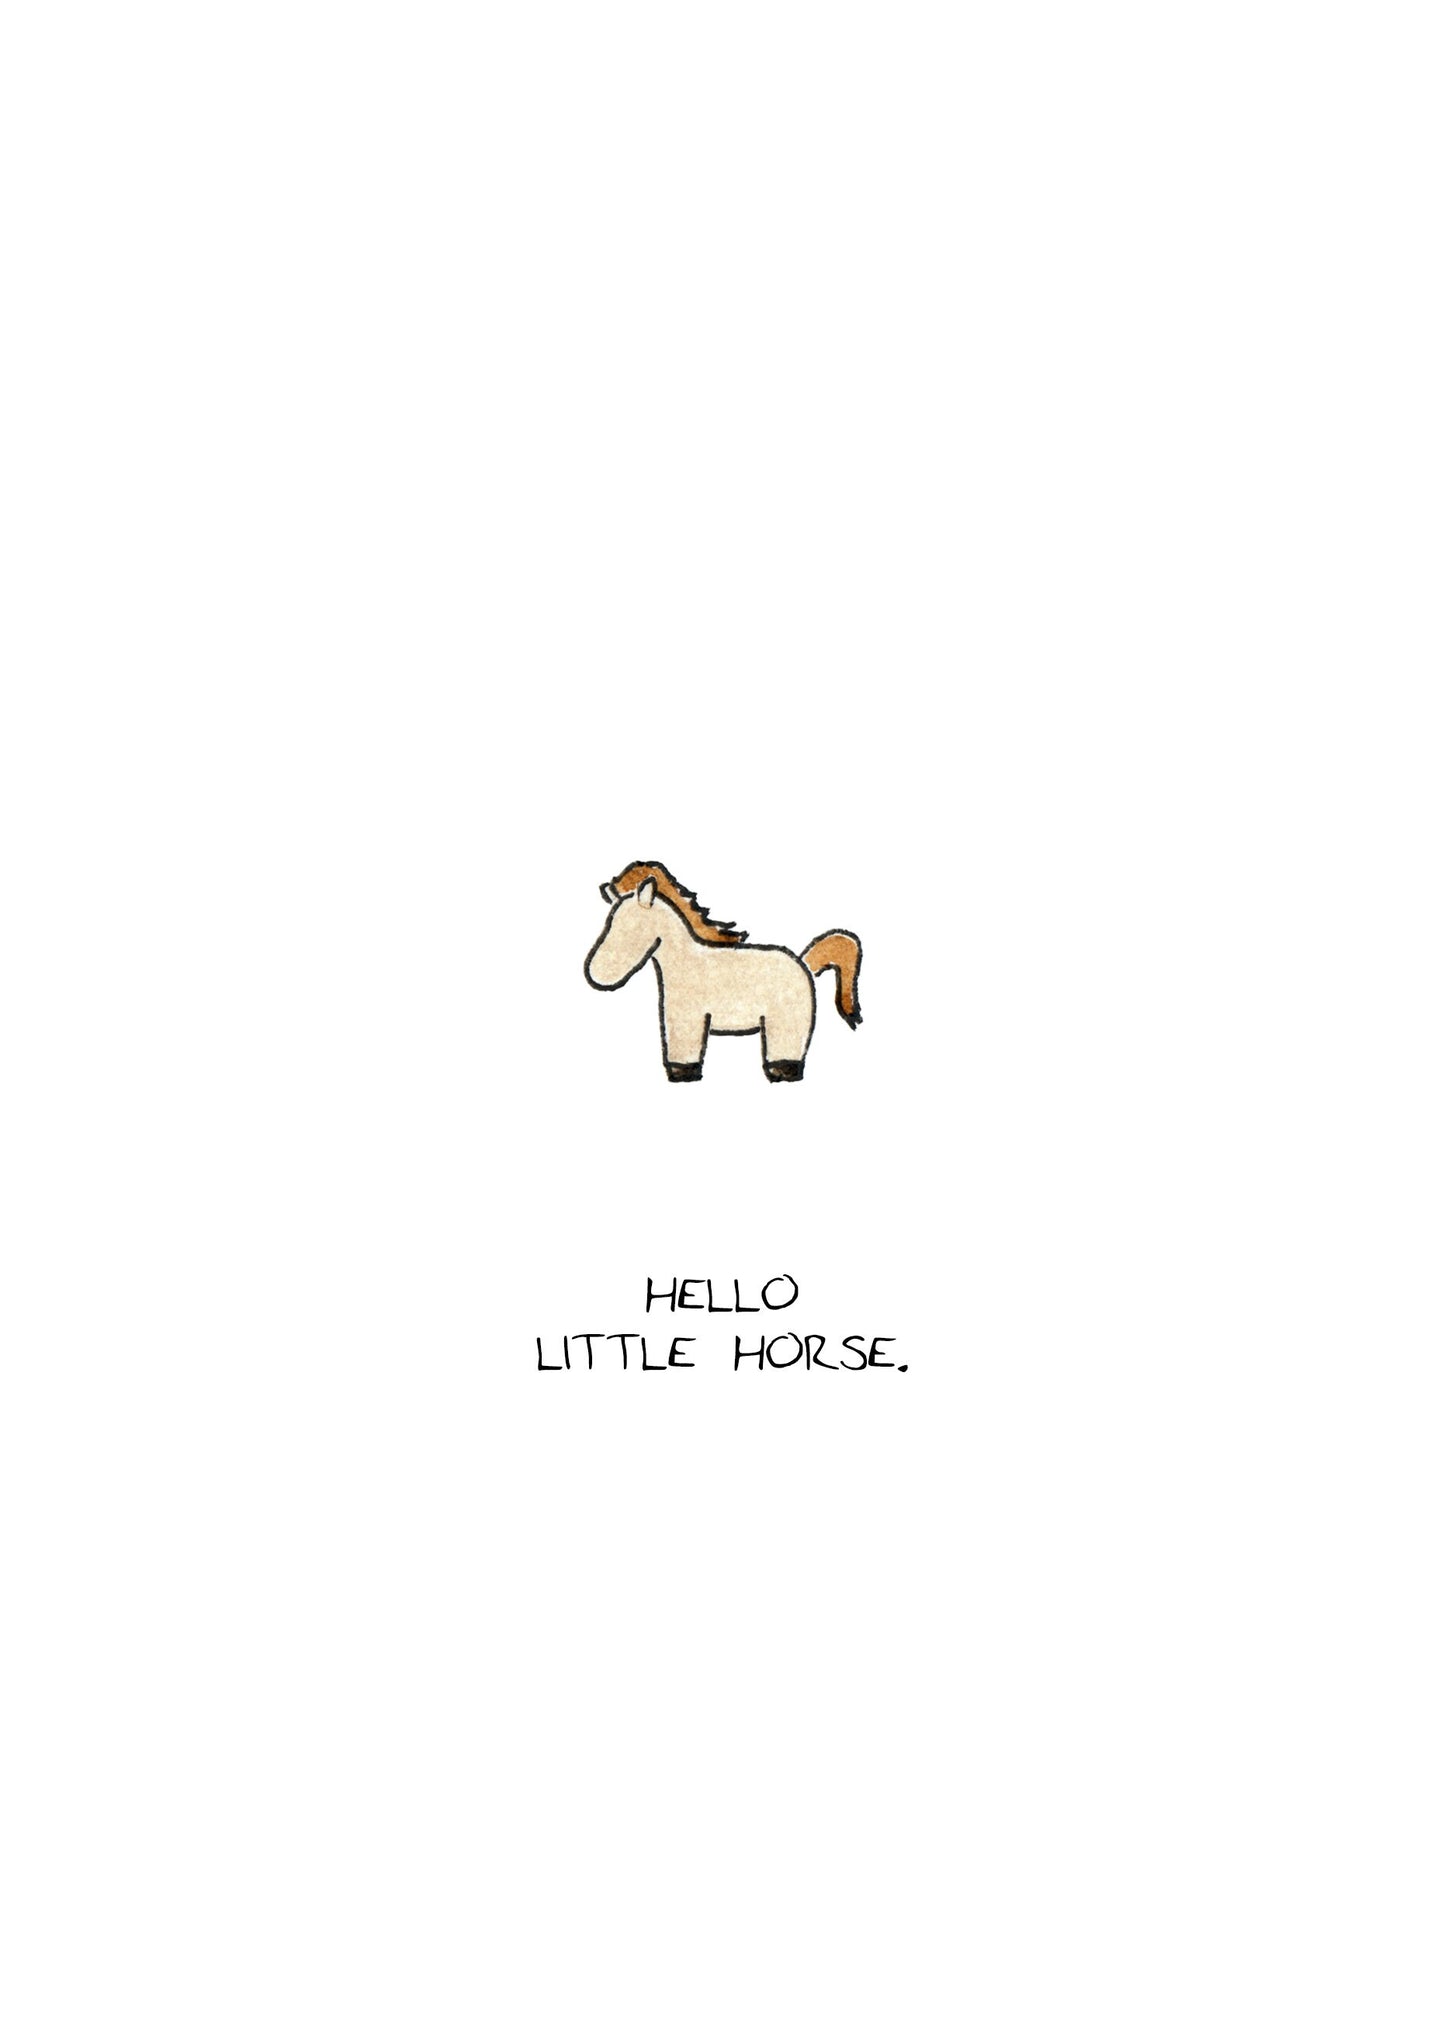 Tiny Horse